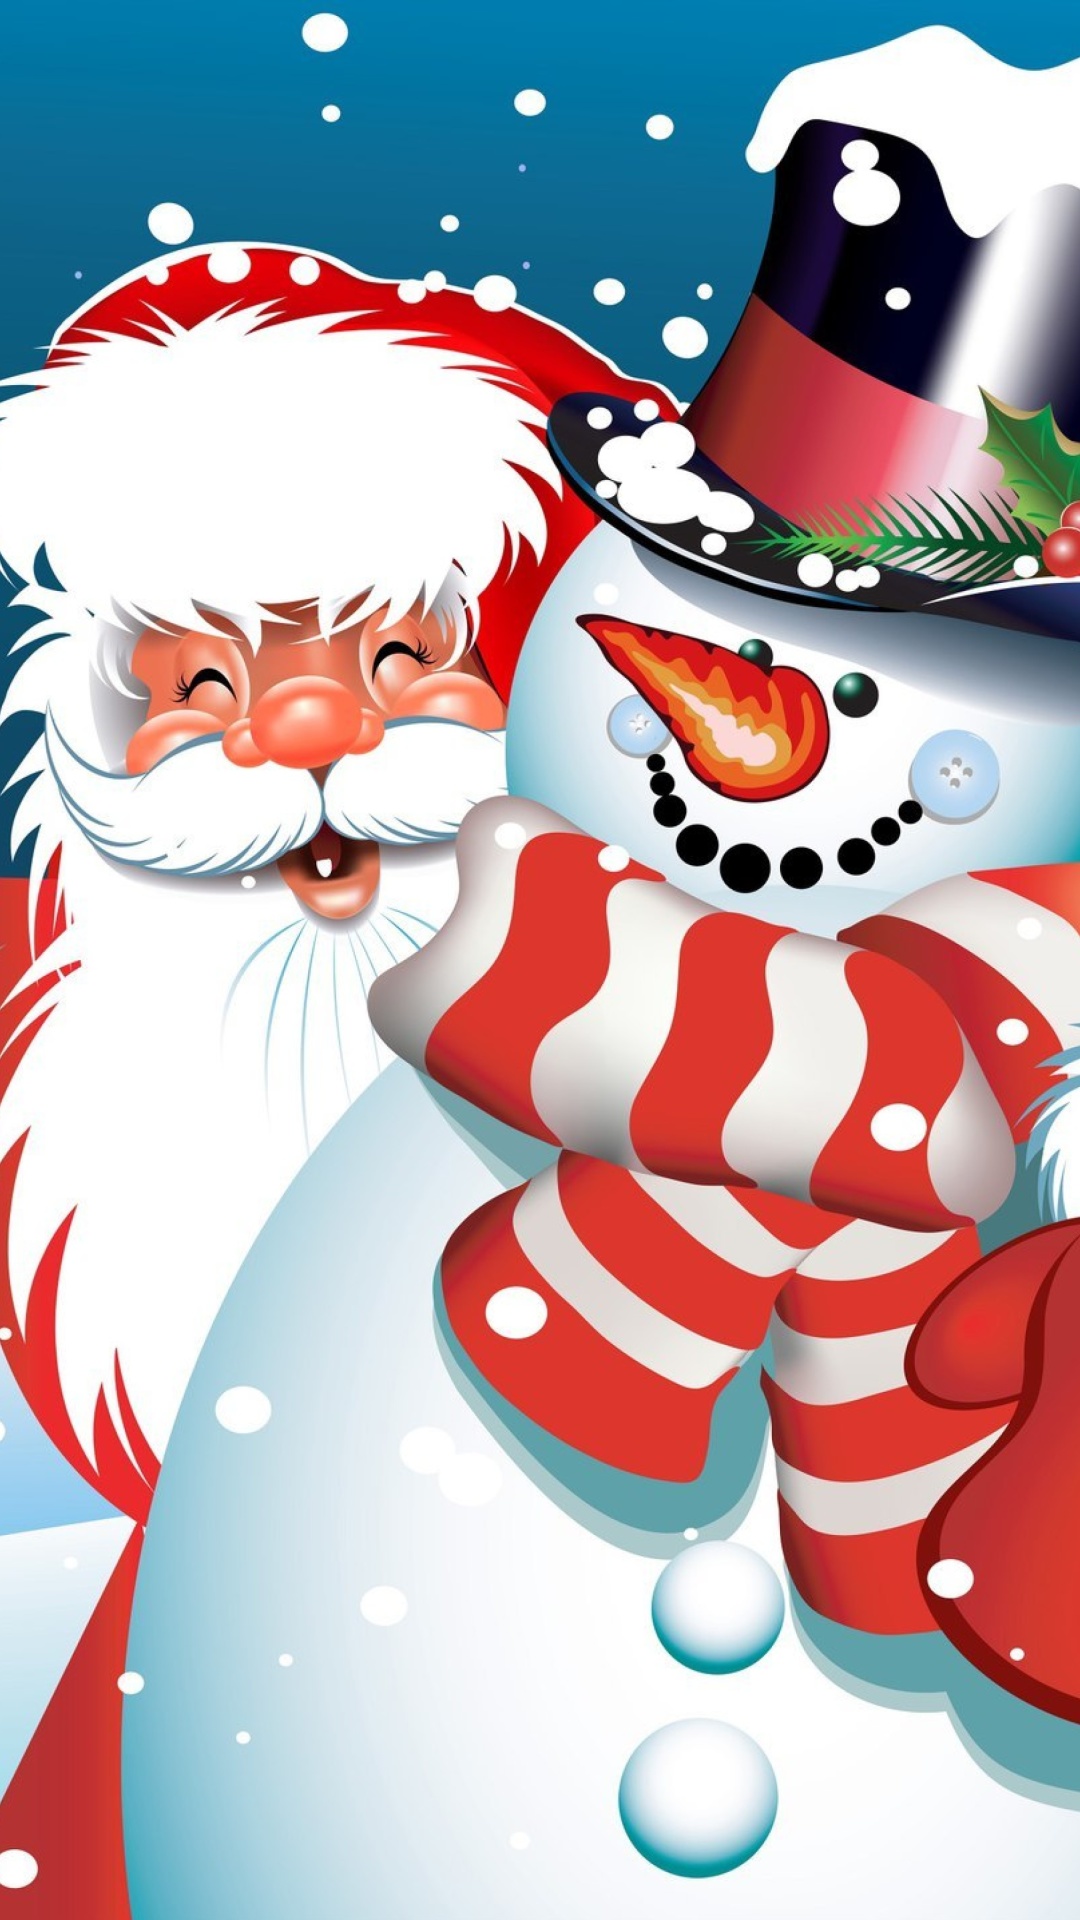 Das Santa with Snowman Wallpaper 1080x1920